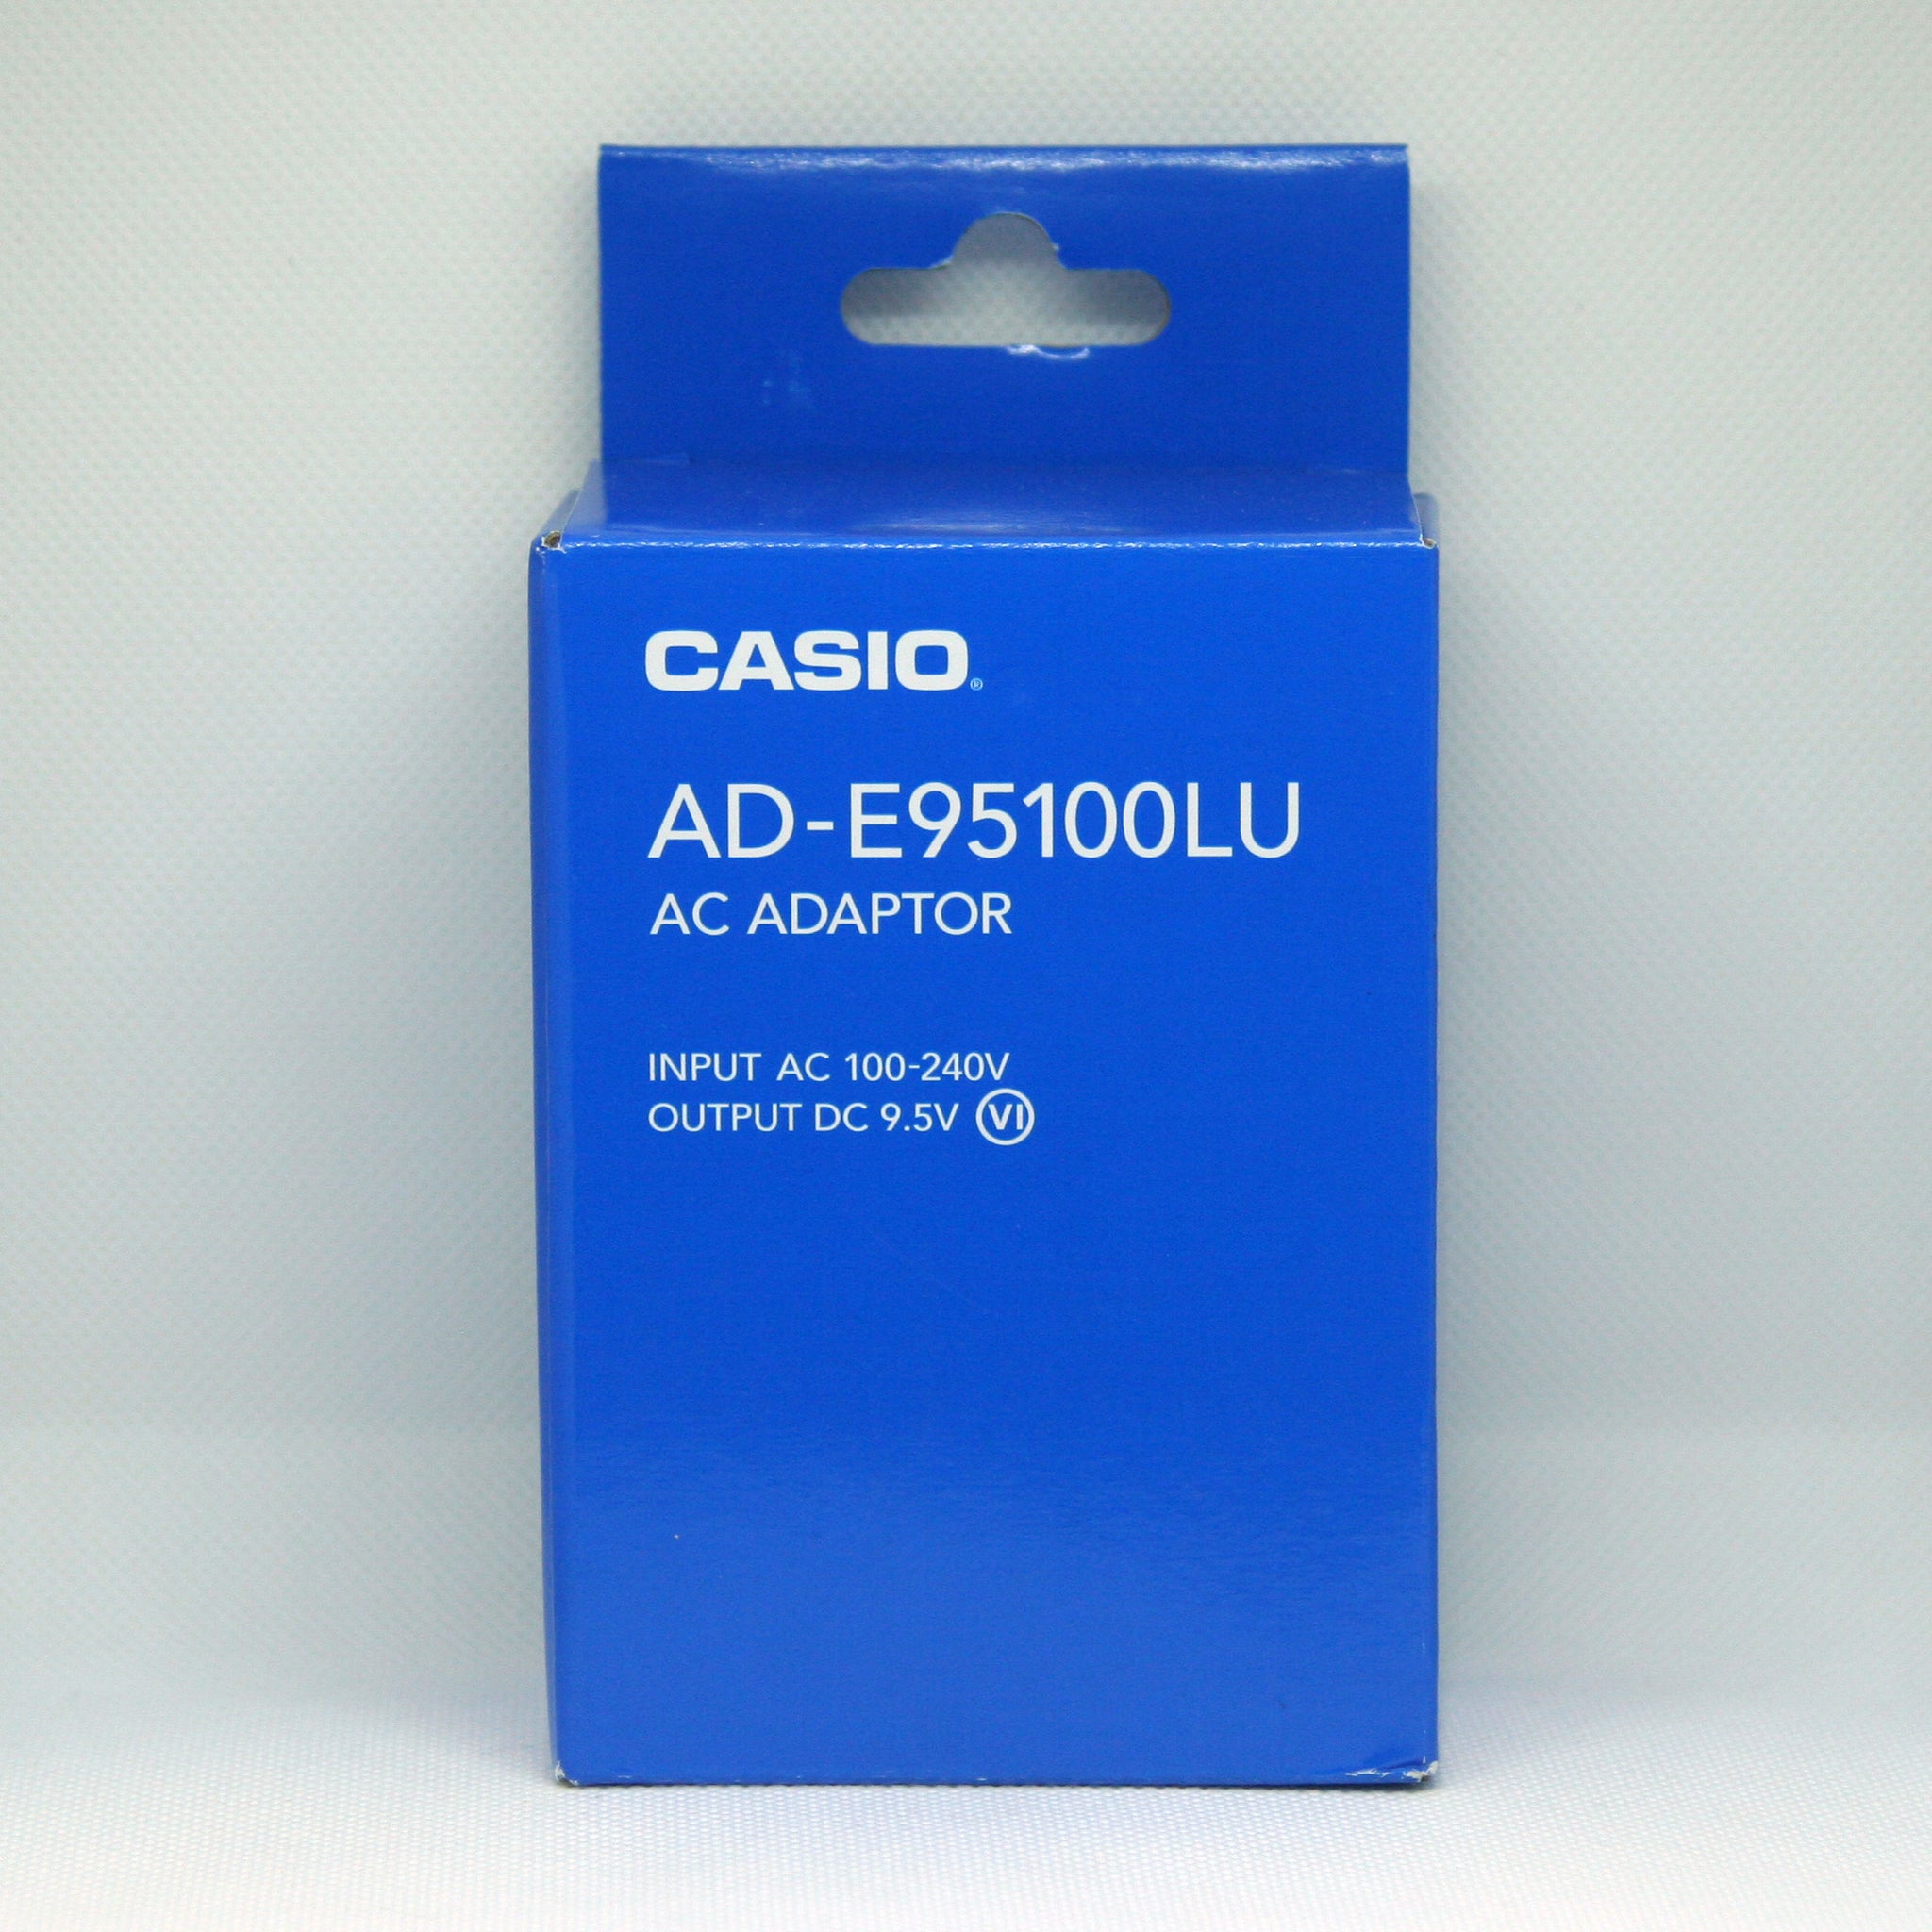 Casio AC Adaptor 9.5V DC AD-E95100LU